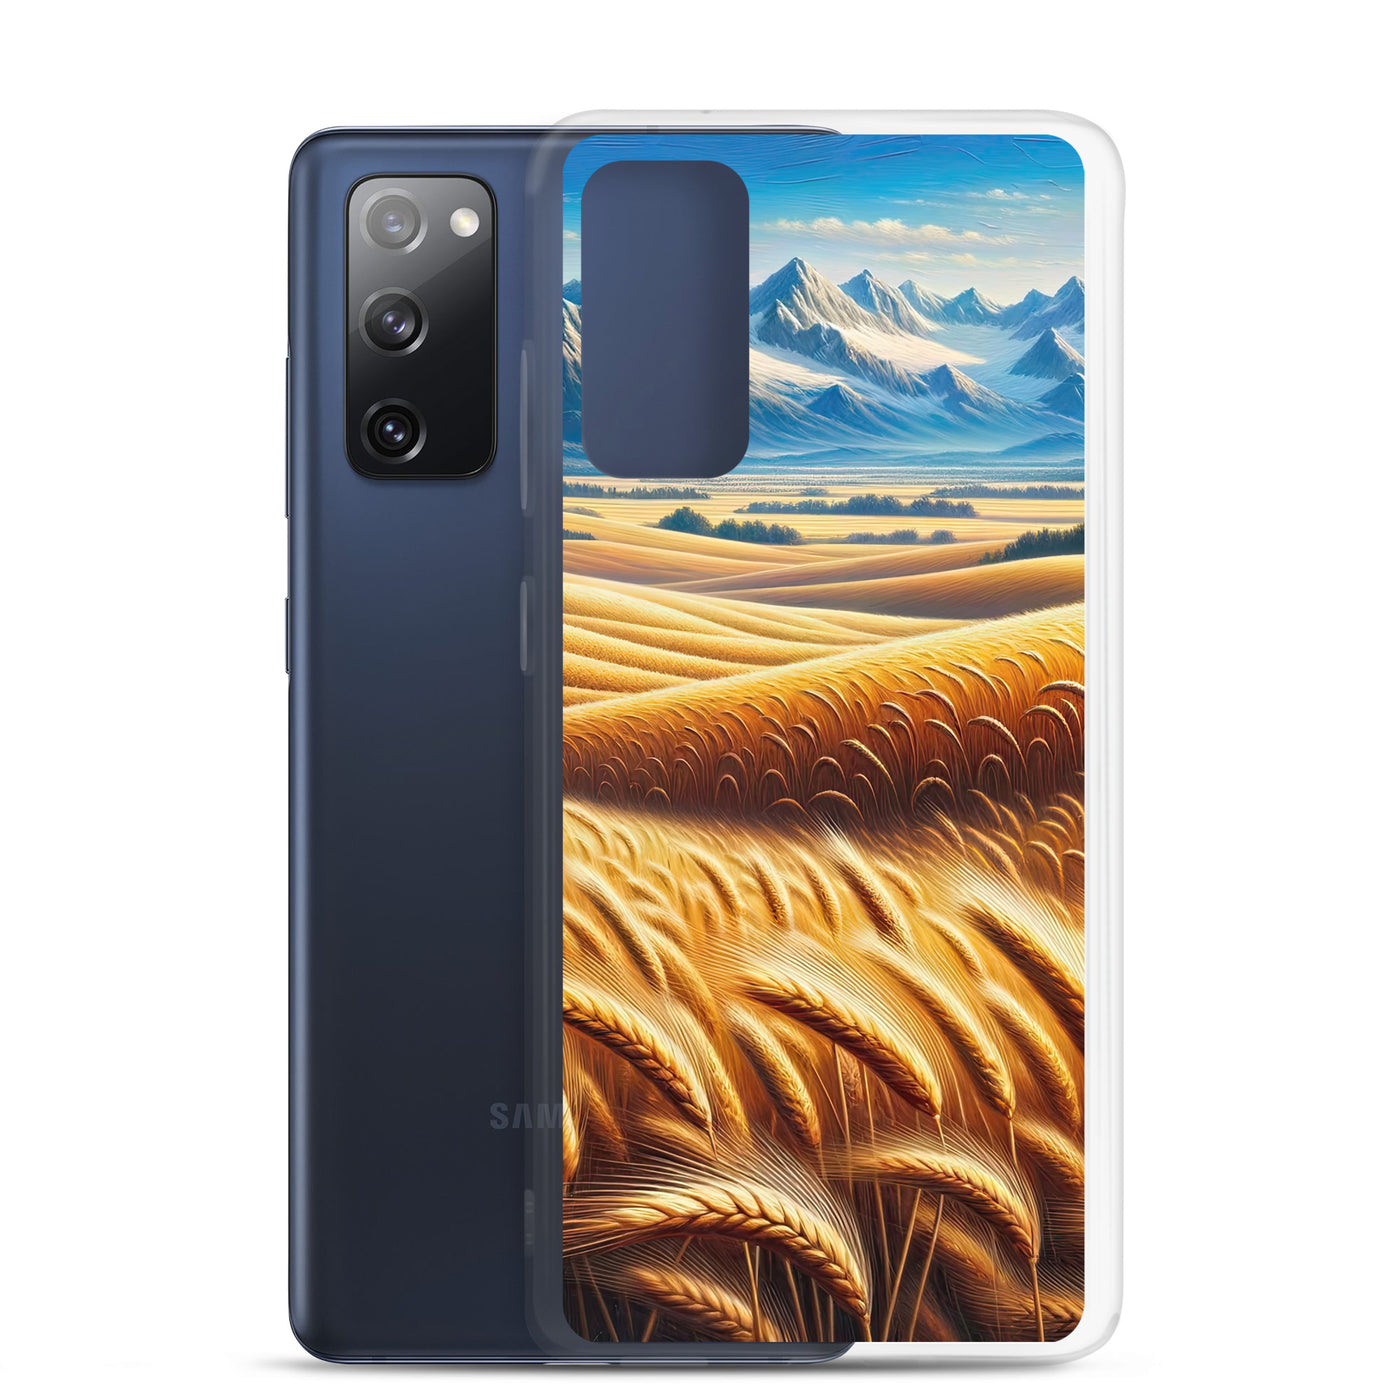 Ölgemälde eines weiten bayerischen Weizenfeldes, golden im Wind (TR) - Samsung Schutzhülle (durchsichtig) xxx yyy zzz